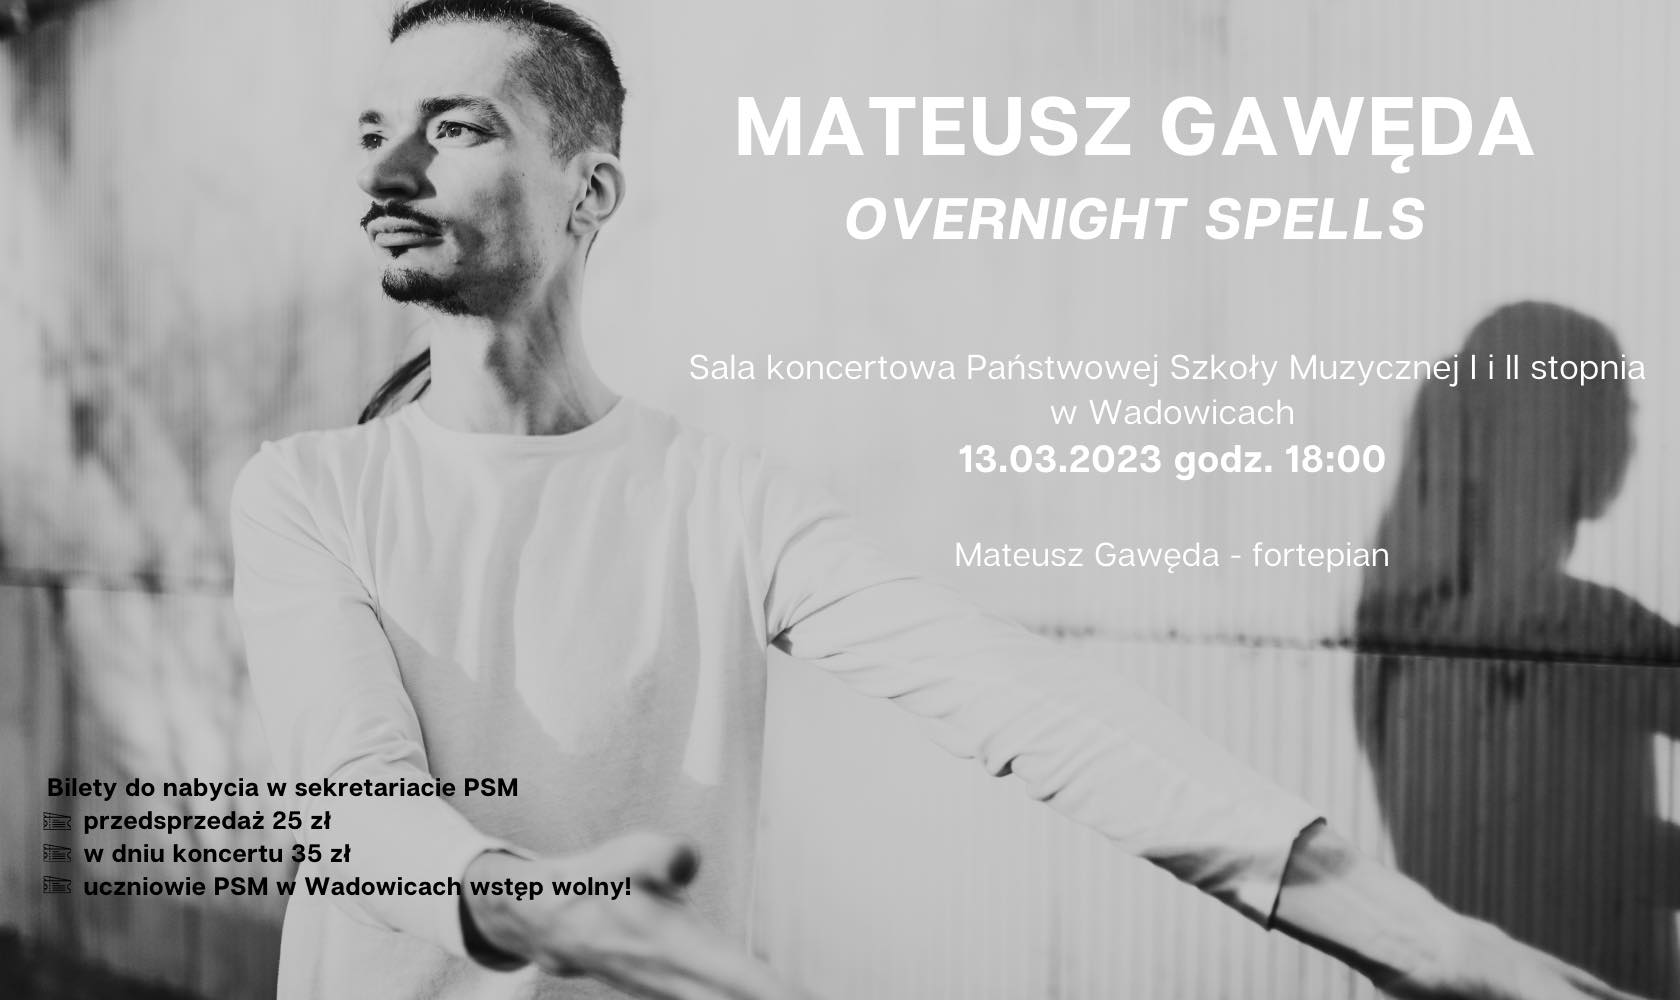 Mateusz Gawęda overnight spells - 13.03.2023